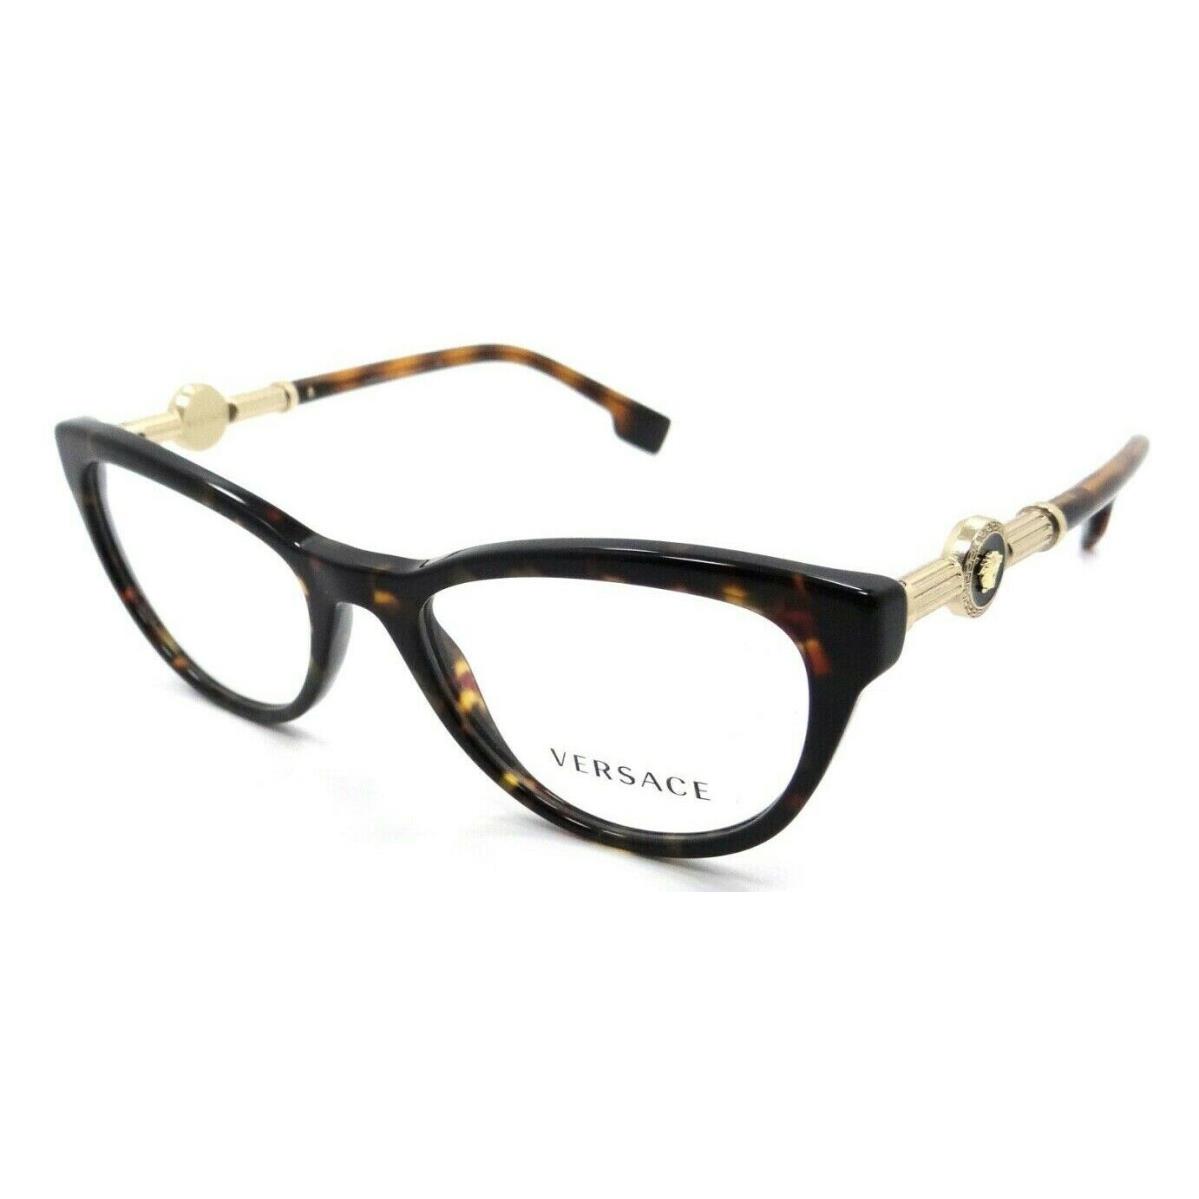 Versace Eyeglasses Frames VE 3311 108 52-18-140 Dark Havana Made in Italy